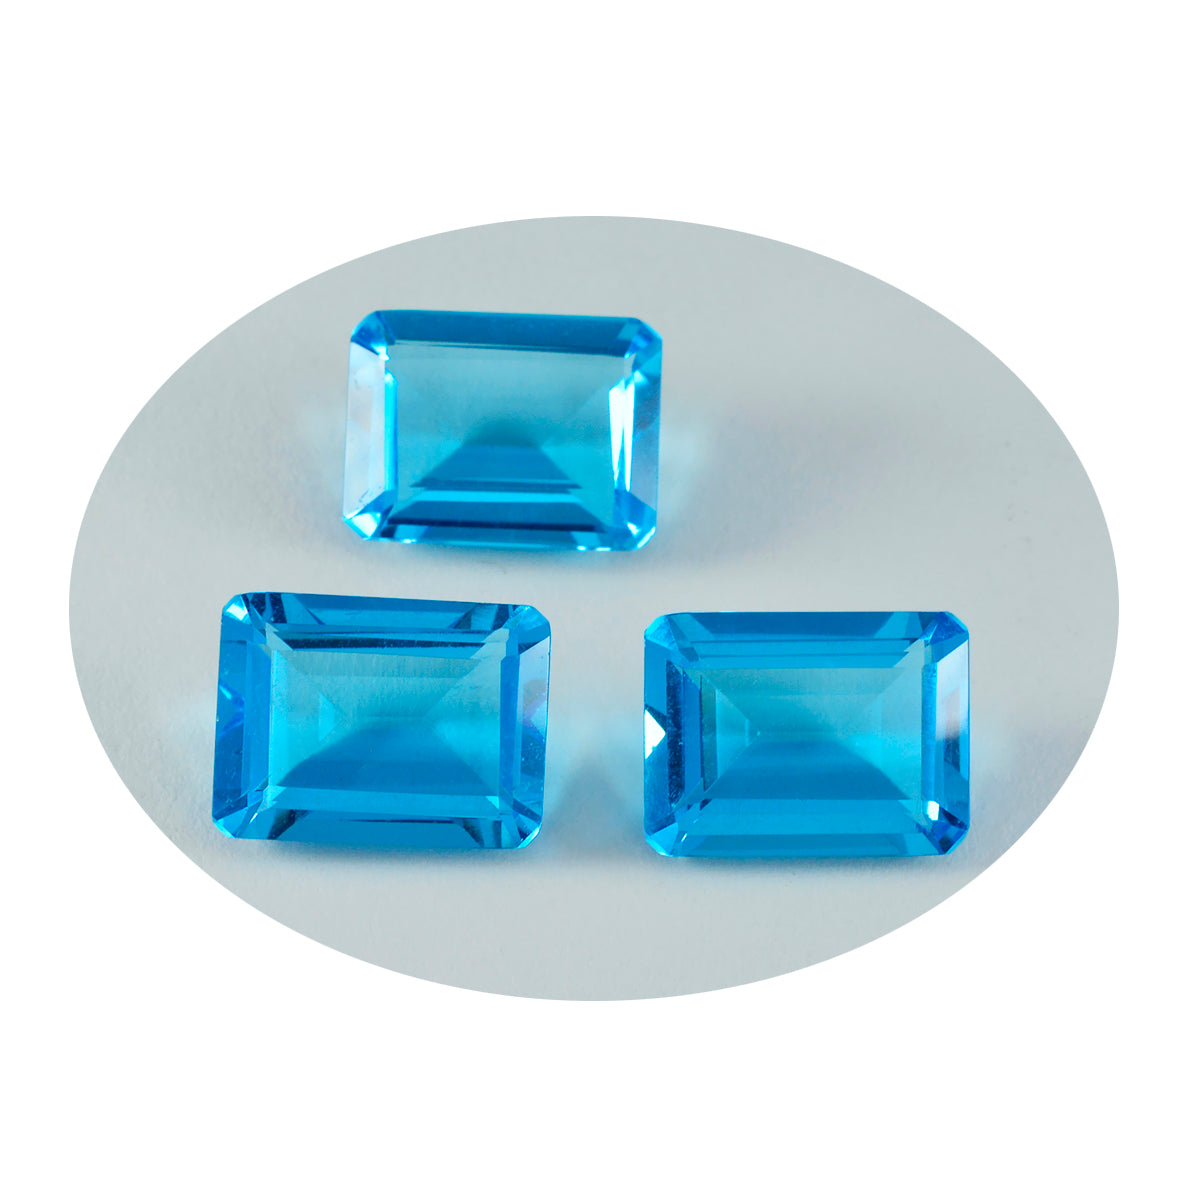 Riyogems 1pc topaze bleue cz facettes 12x16mm forme octogonale jolie pierre précieuse de qualité